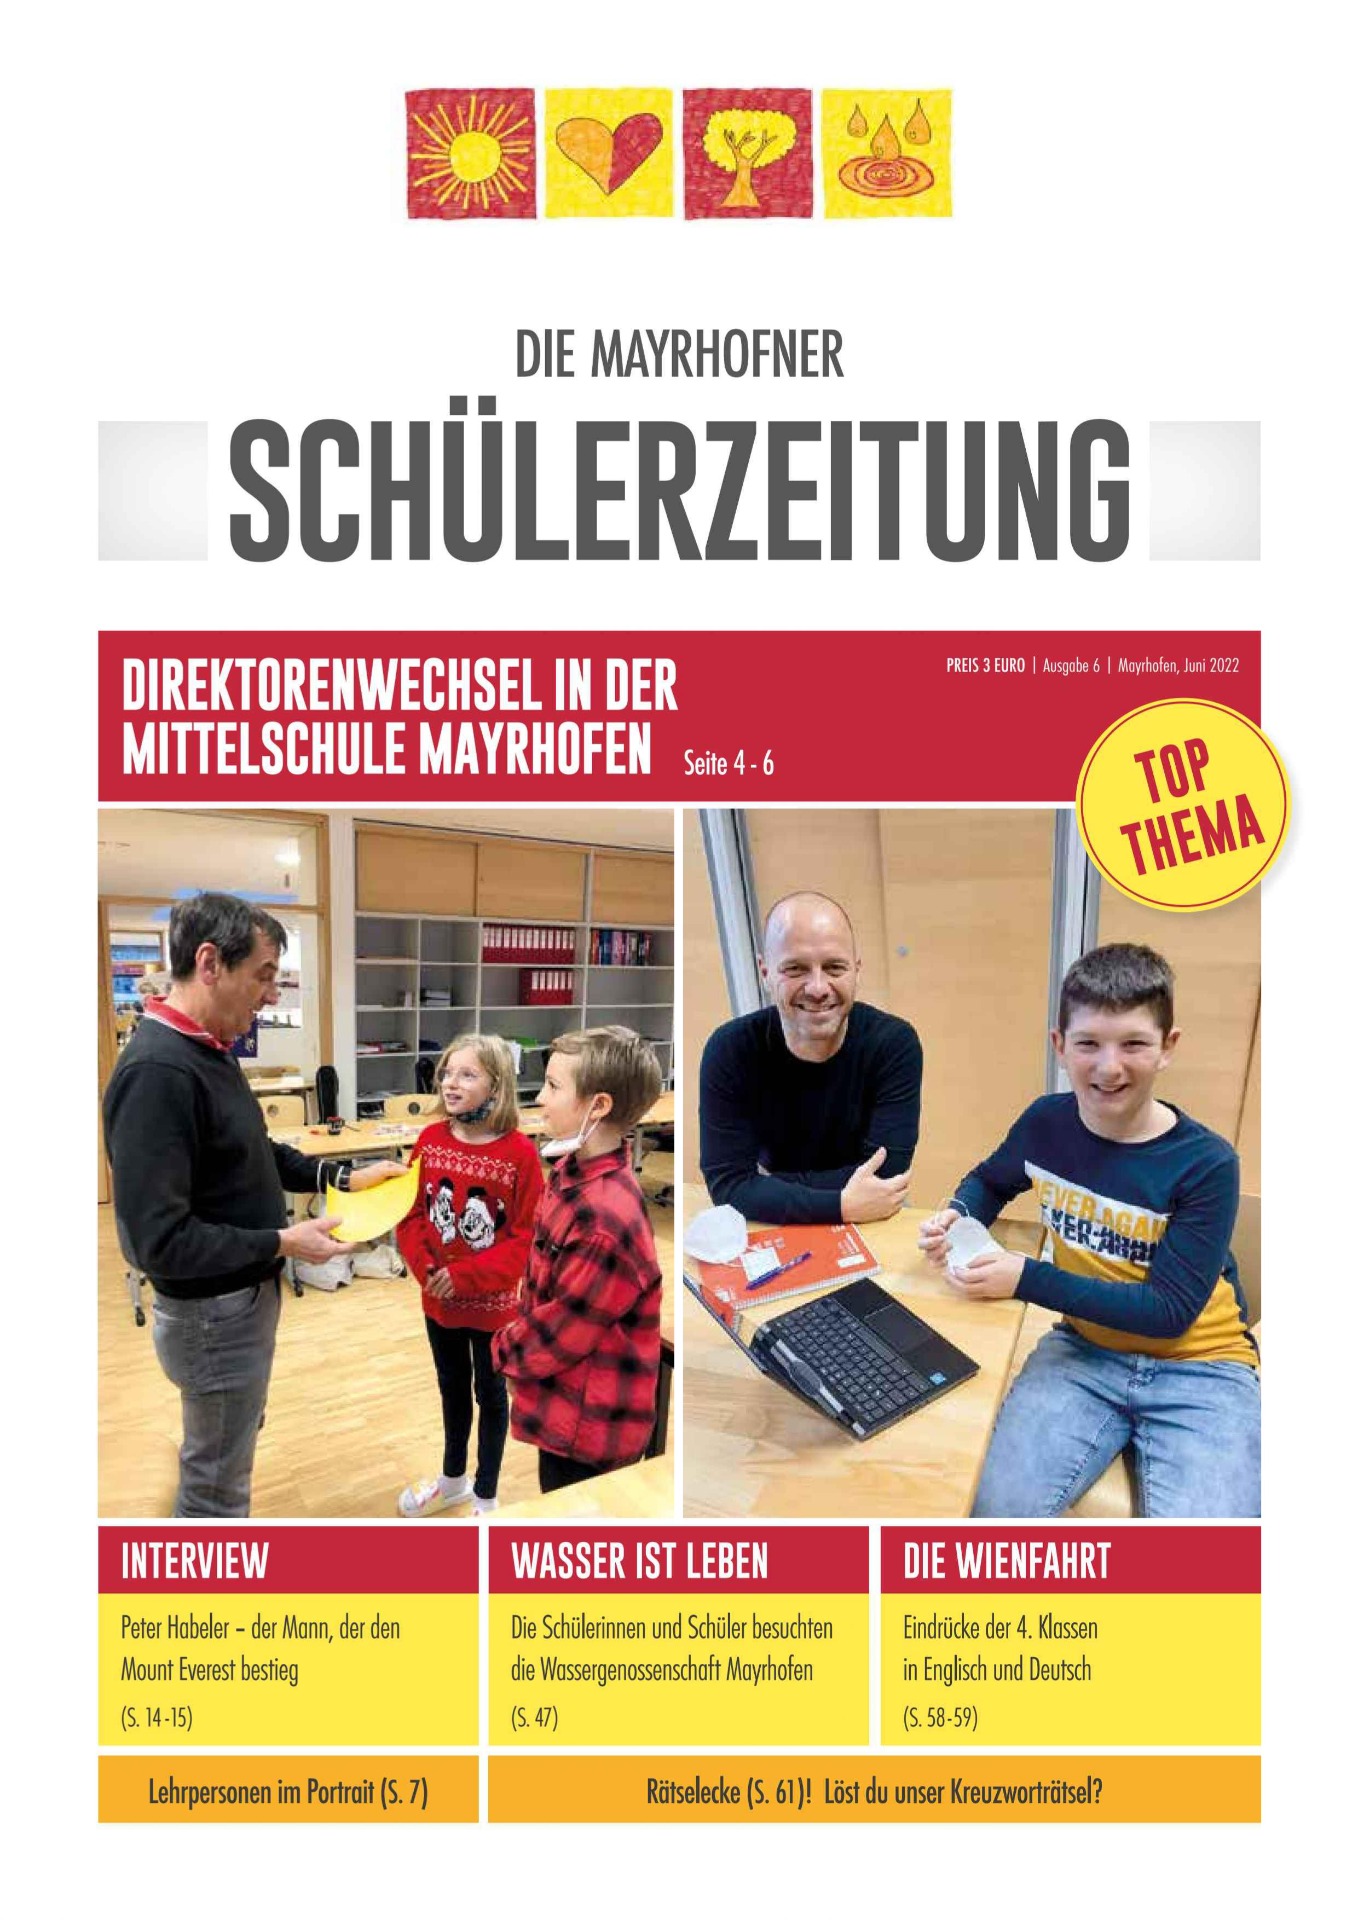 Die Mayrhofner Schülerzeitung - Bild 2